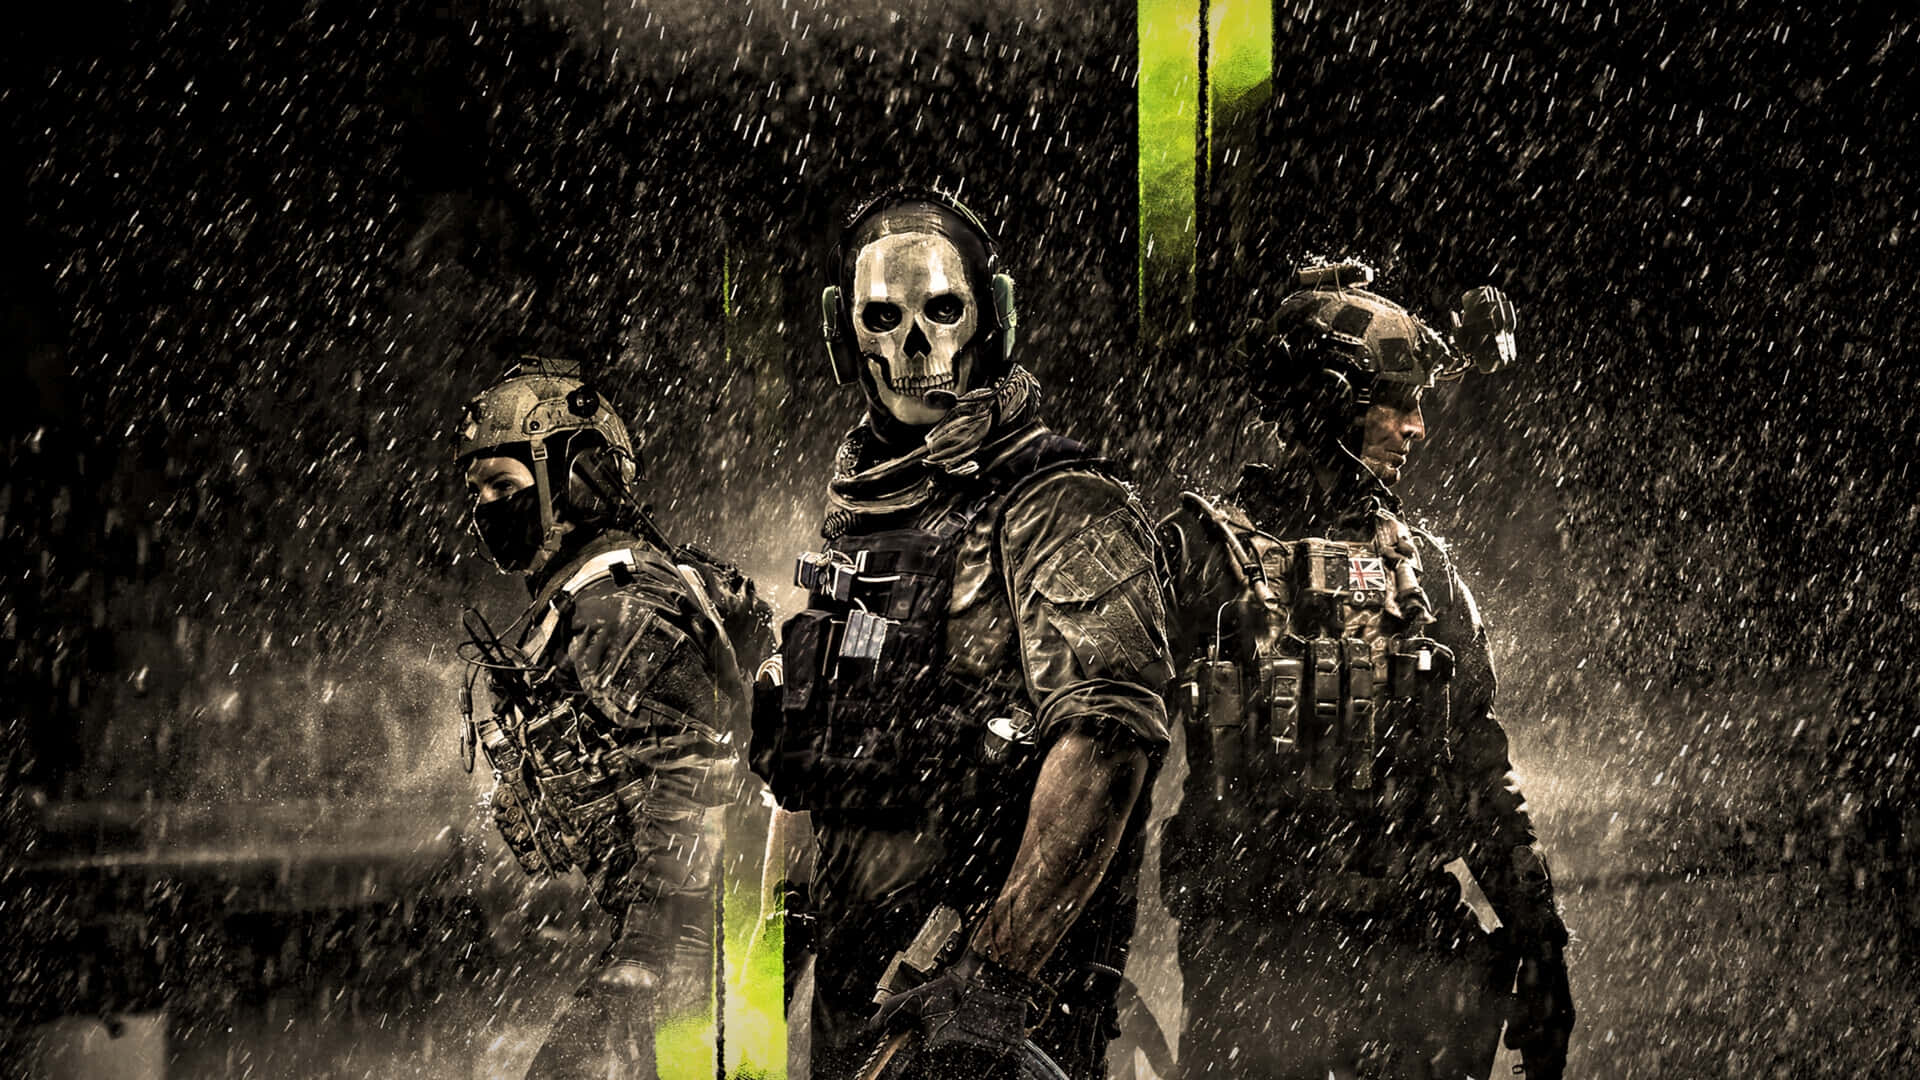 Tag svaret på opfordringen fra Call of Duty med dette kamp-tema tapet. Wallpaper